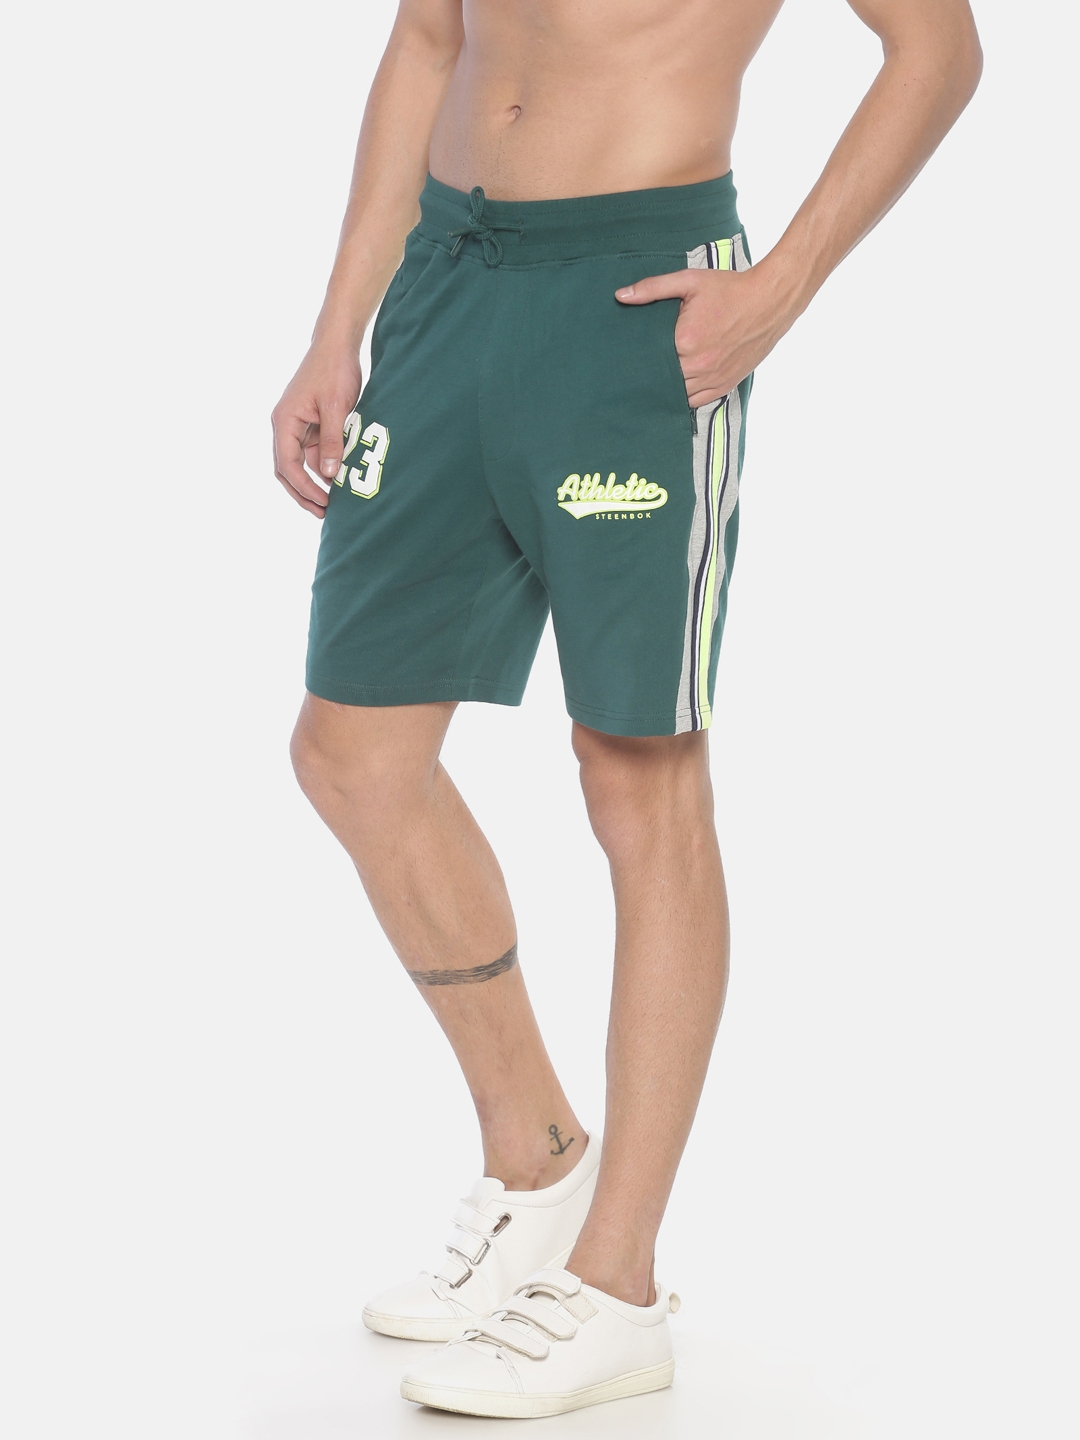 Steenbok | Steenbok Men's Dark Green Shorts 1